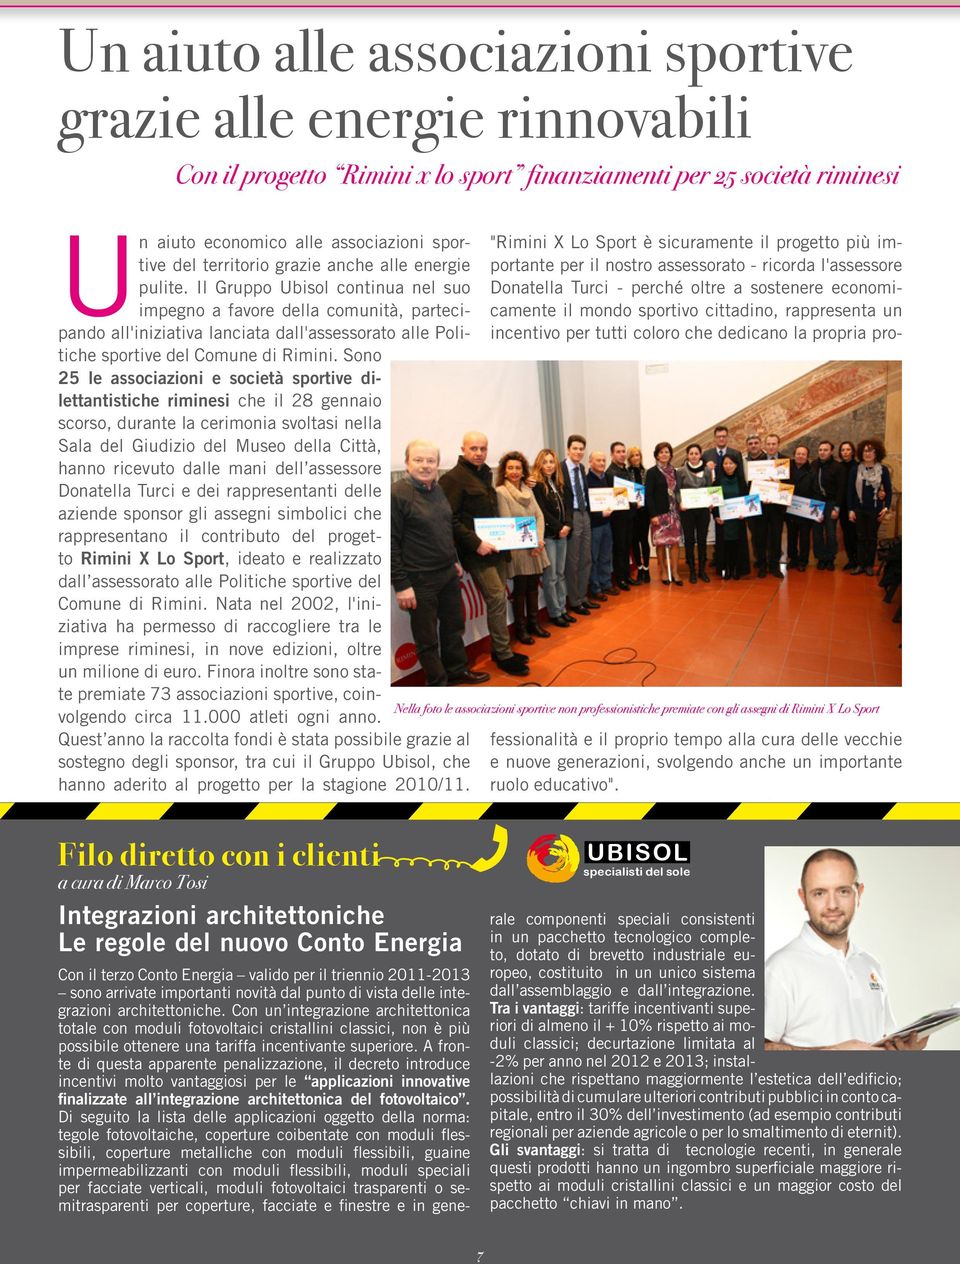 Il Gruppo Ubisol continua nel suo impegno a favore della comunità, partecipando all'iniziativa lanciata dall'assessorato alle Politiche sportive del Comune di Rimini.